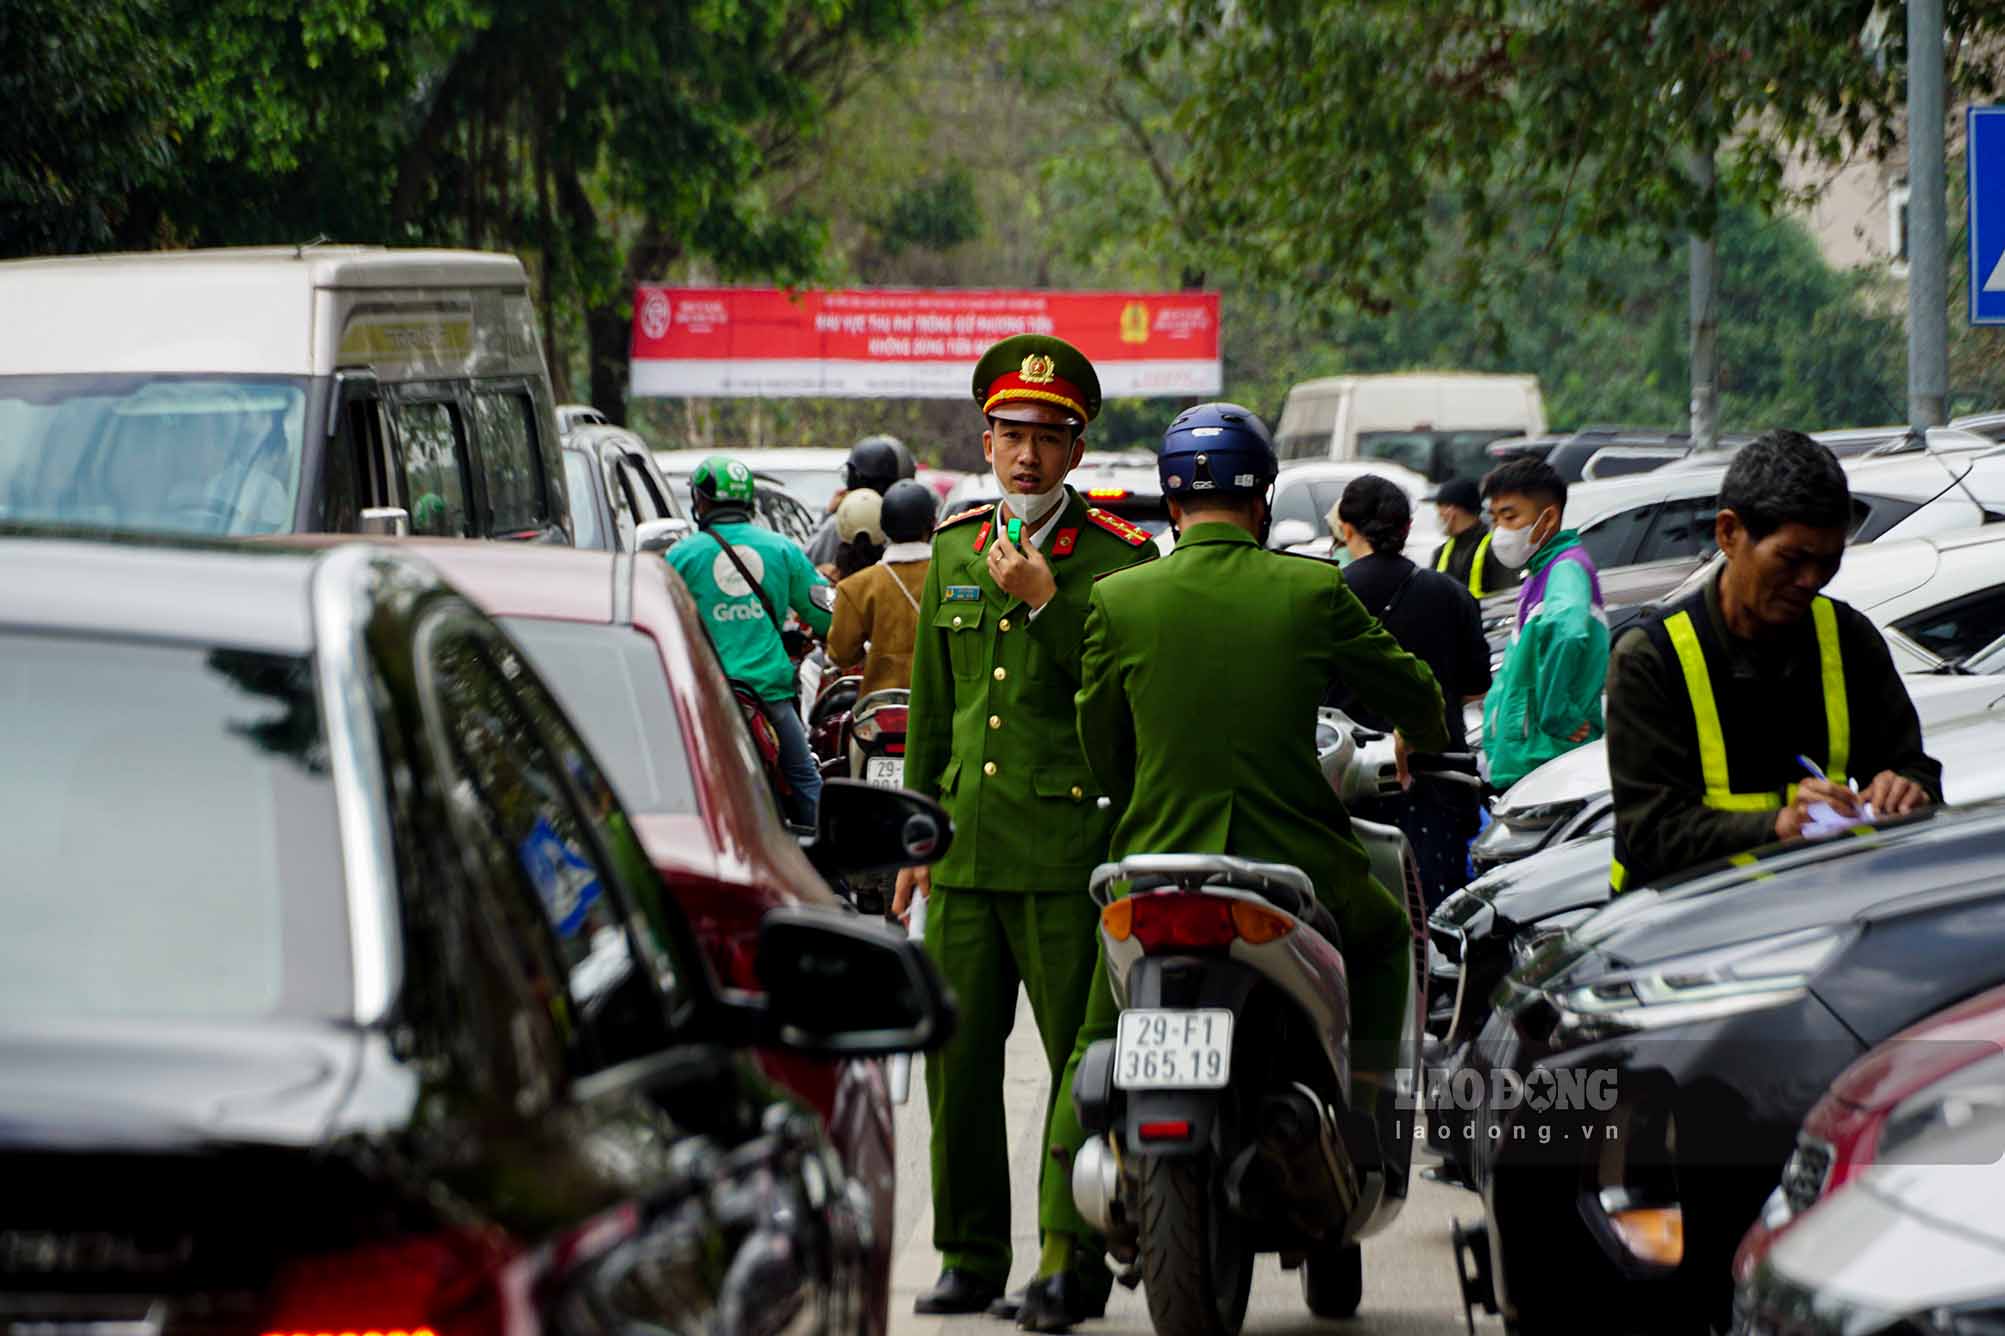 Để đảm bảo an toàn tại các điểm trông giữ phương tiện, lực lượng chức năng phường Quảng An, quận Tây Hồ đã tăng cường kiểm tra, giám sát việc chấp hành các quy định của pháp luật đối với hoạt động trông giữ phương tiện.